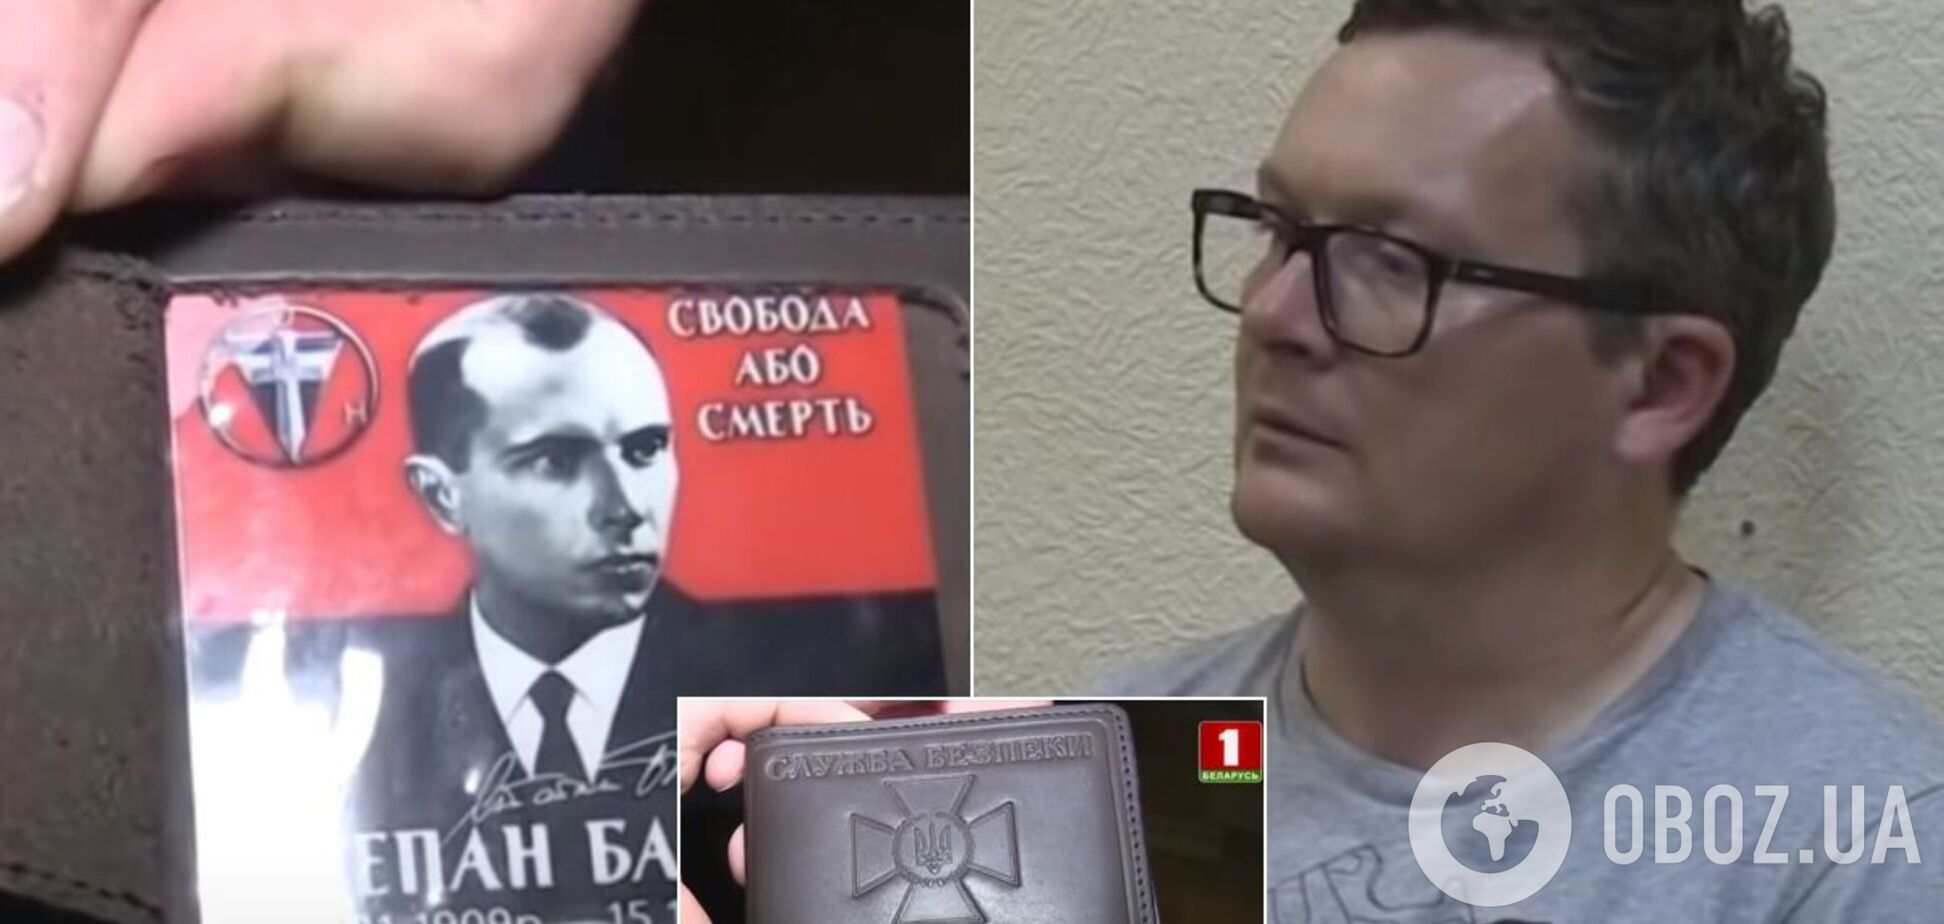 На білоруському ТБ показали 'організатора' акцій протесту з гаманцем СБУ і календариком Бандери